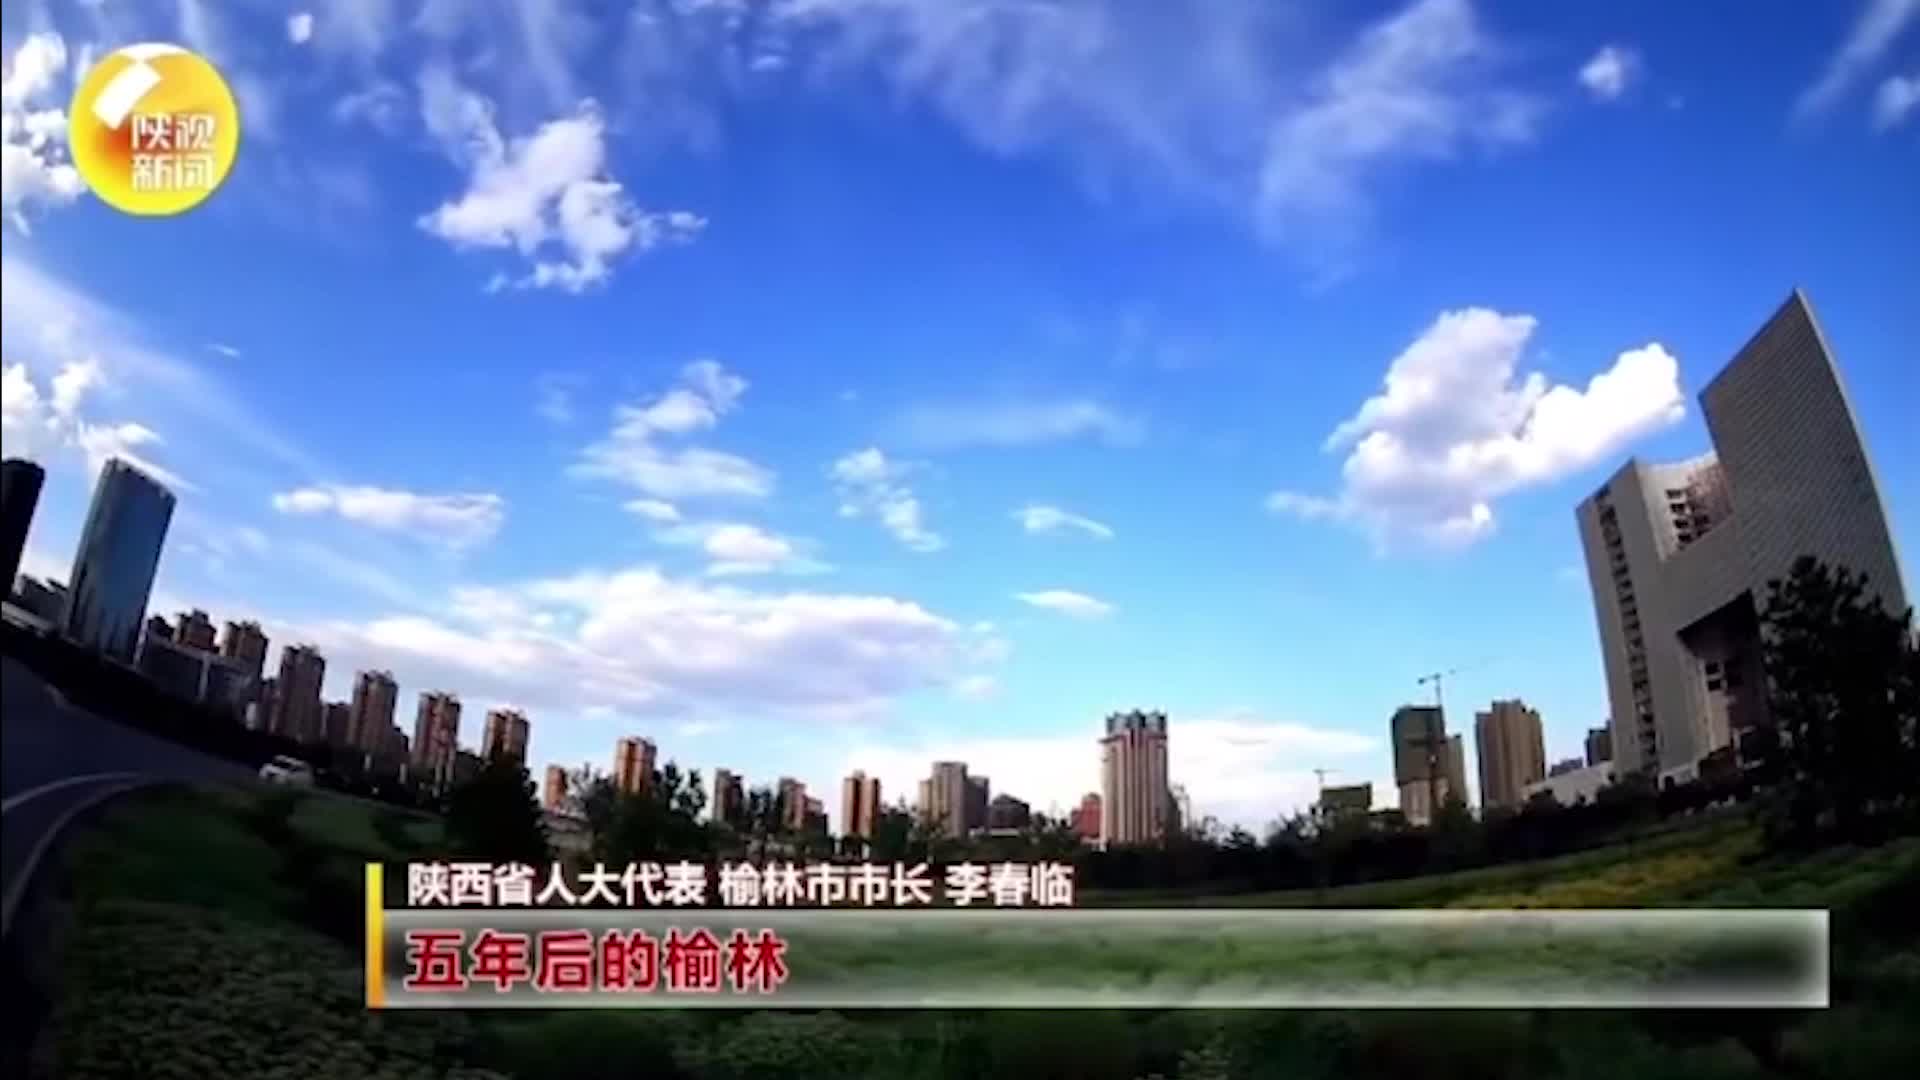 代表对你说 五年后的陕西 | “百年奋斗 铸就辉煌”庆祝中国共产党成立100周年网络视听短视频大赛作品展播